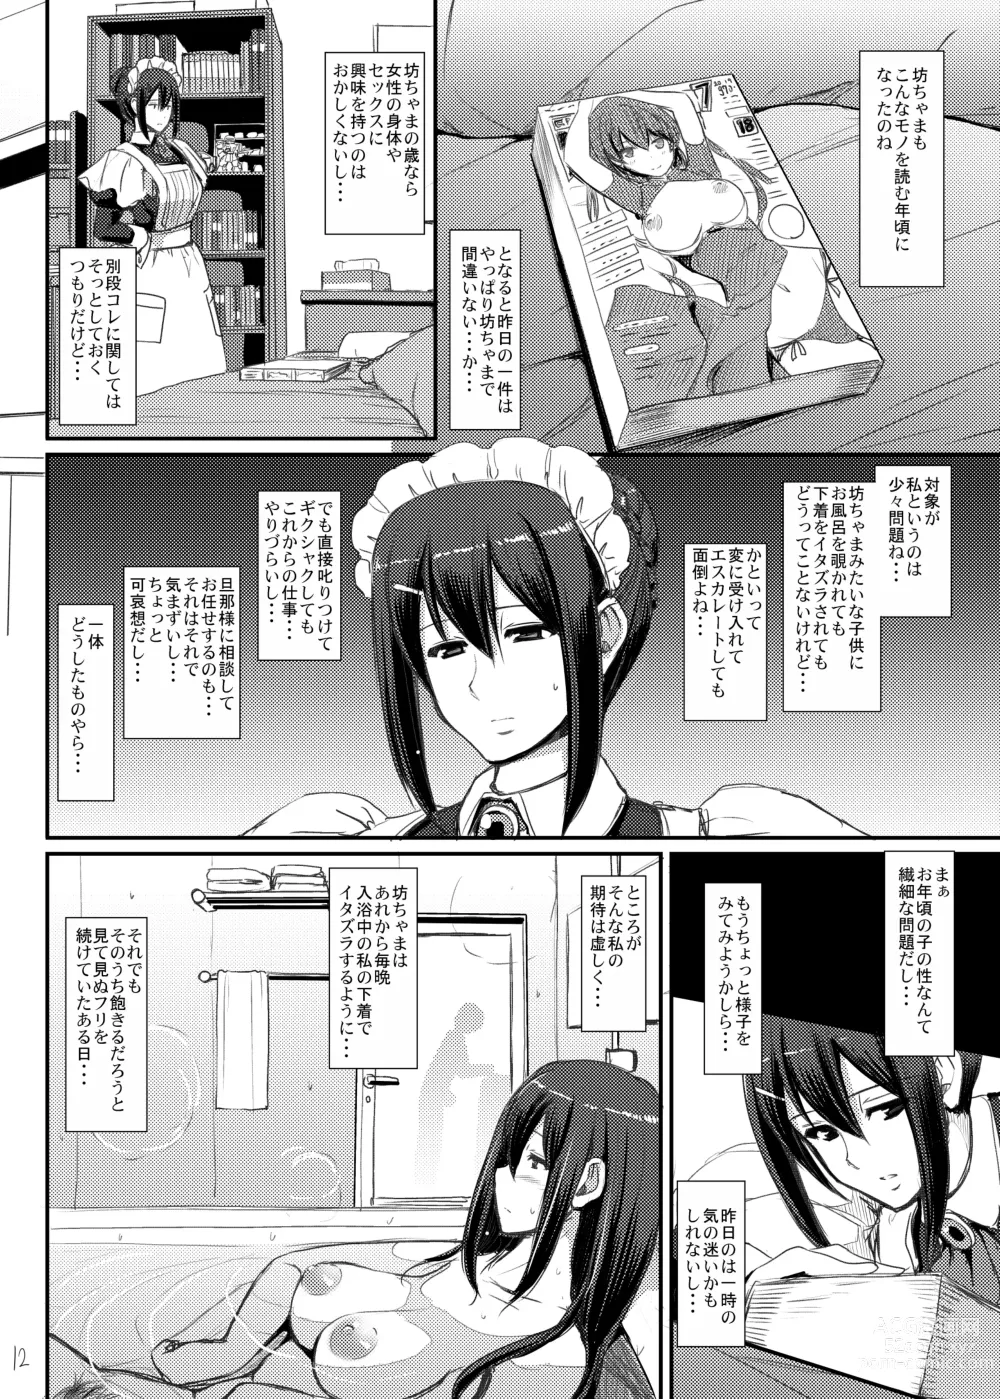 Page 13 of doujinshi Maid no Oshigoto.